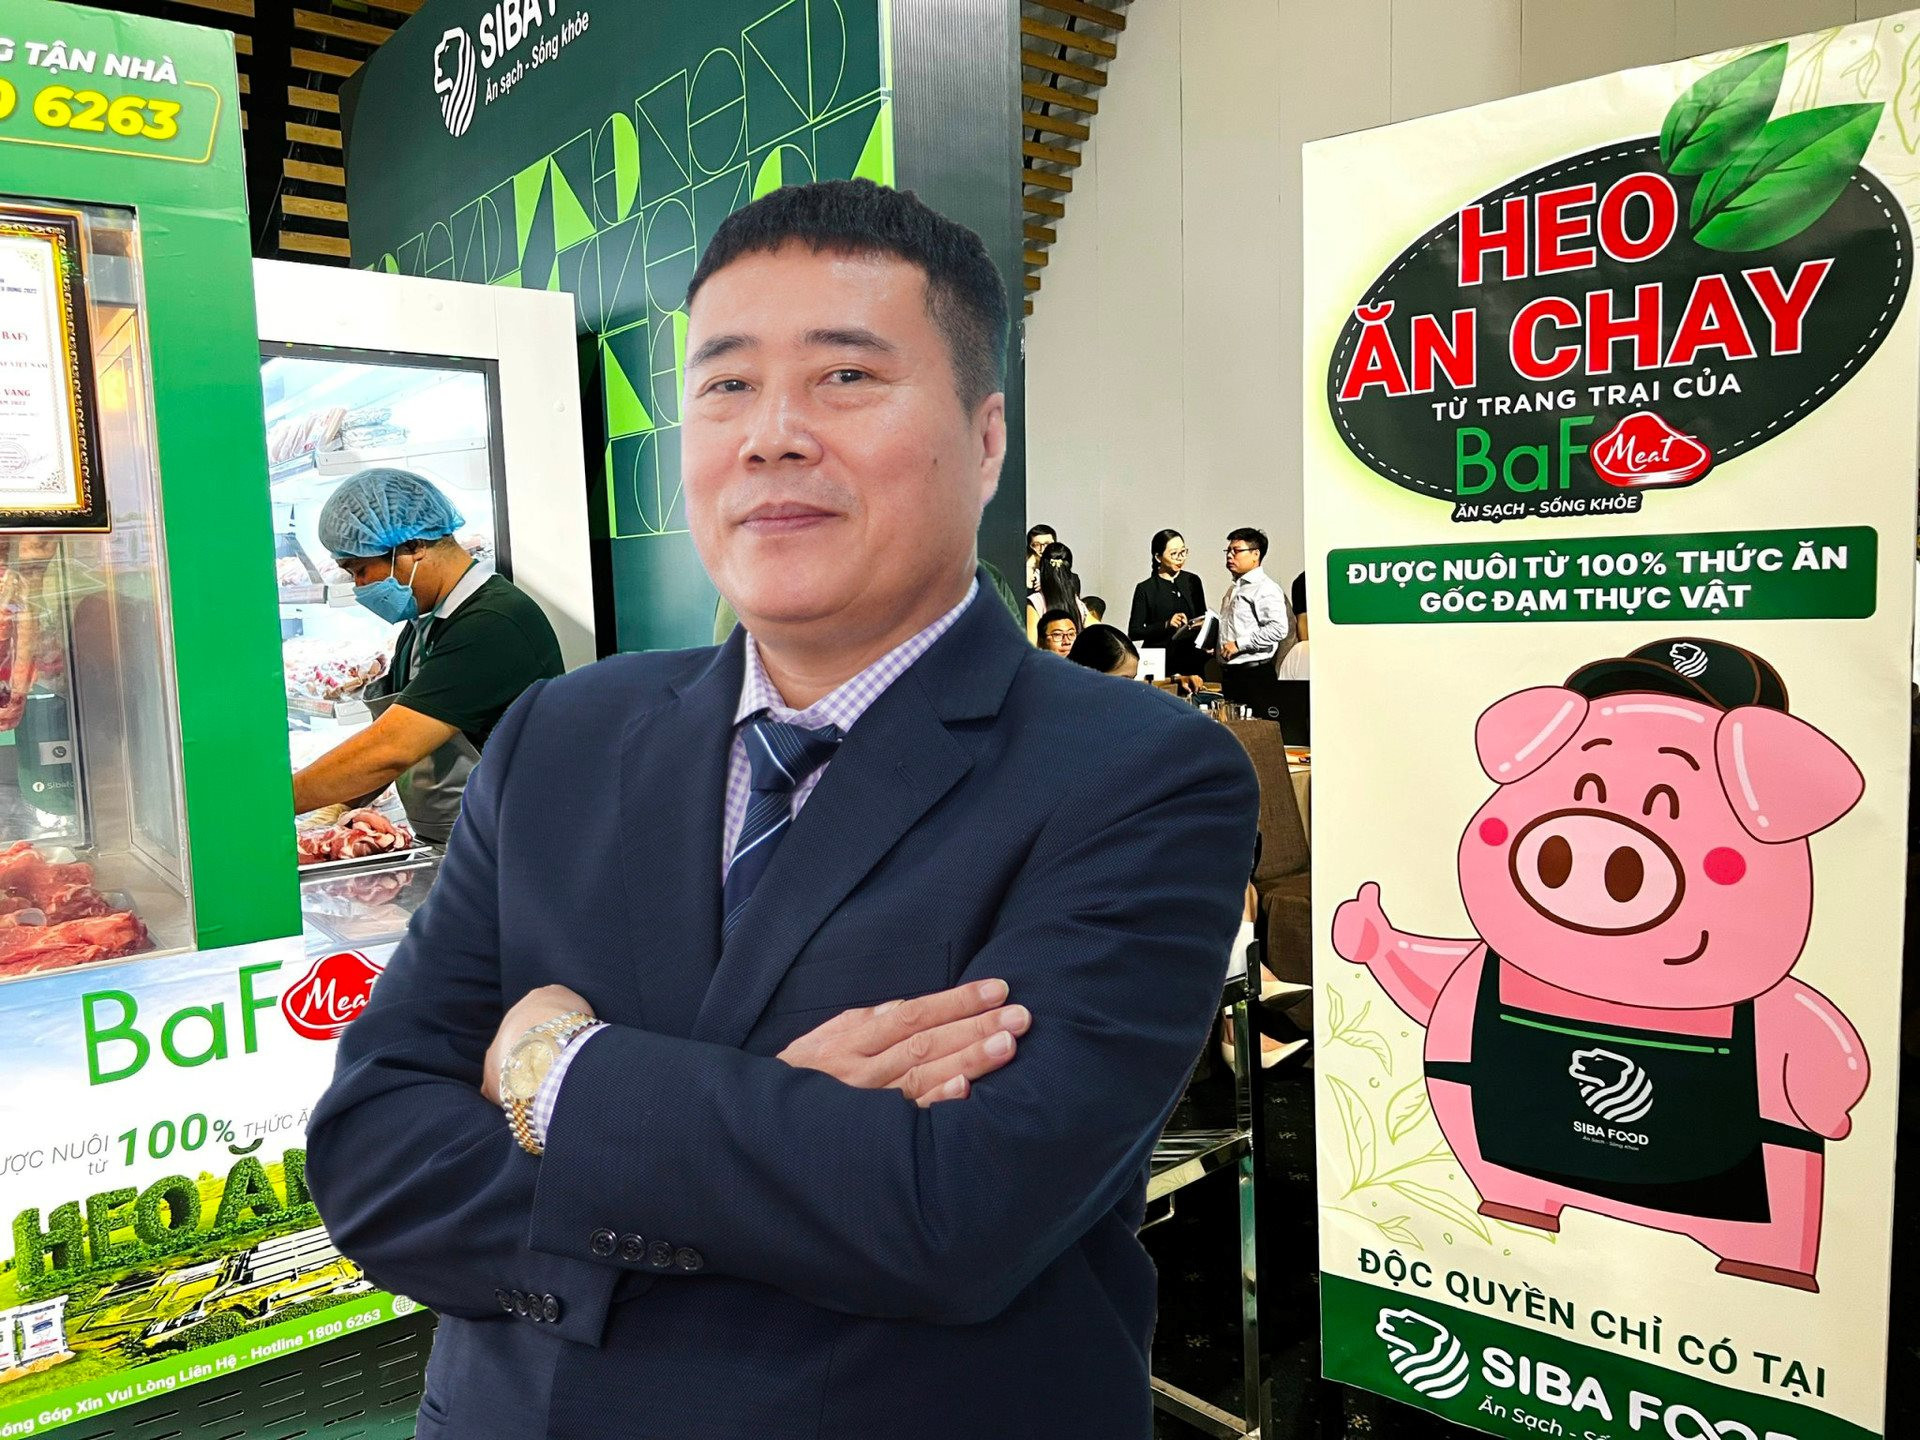 Trại lợn của đại gia “heo ăn chay” Trương Sỹ Bá tại Hòa Bình bị xử phạt do xả thải trái phép ra môi trường